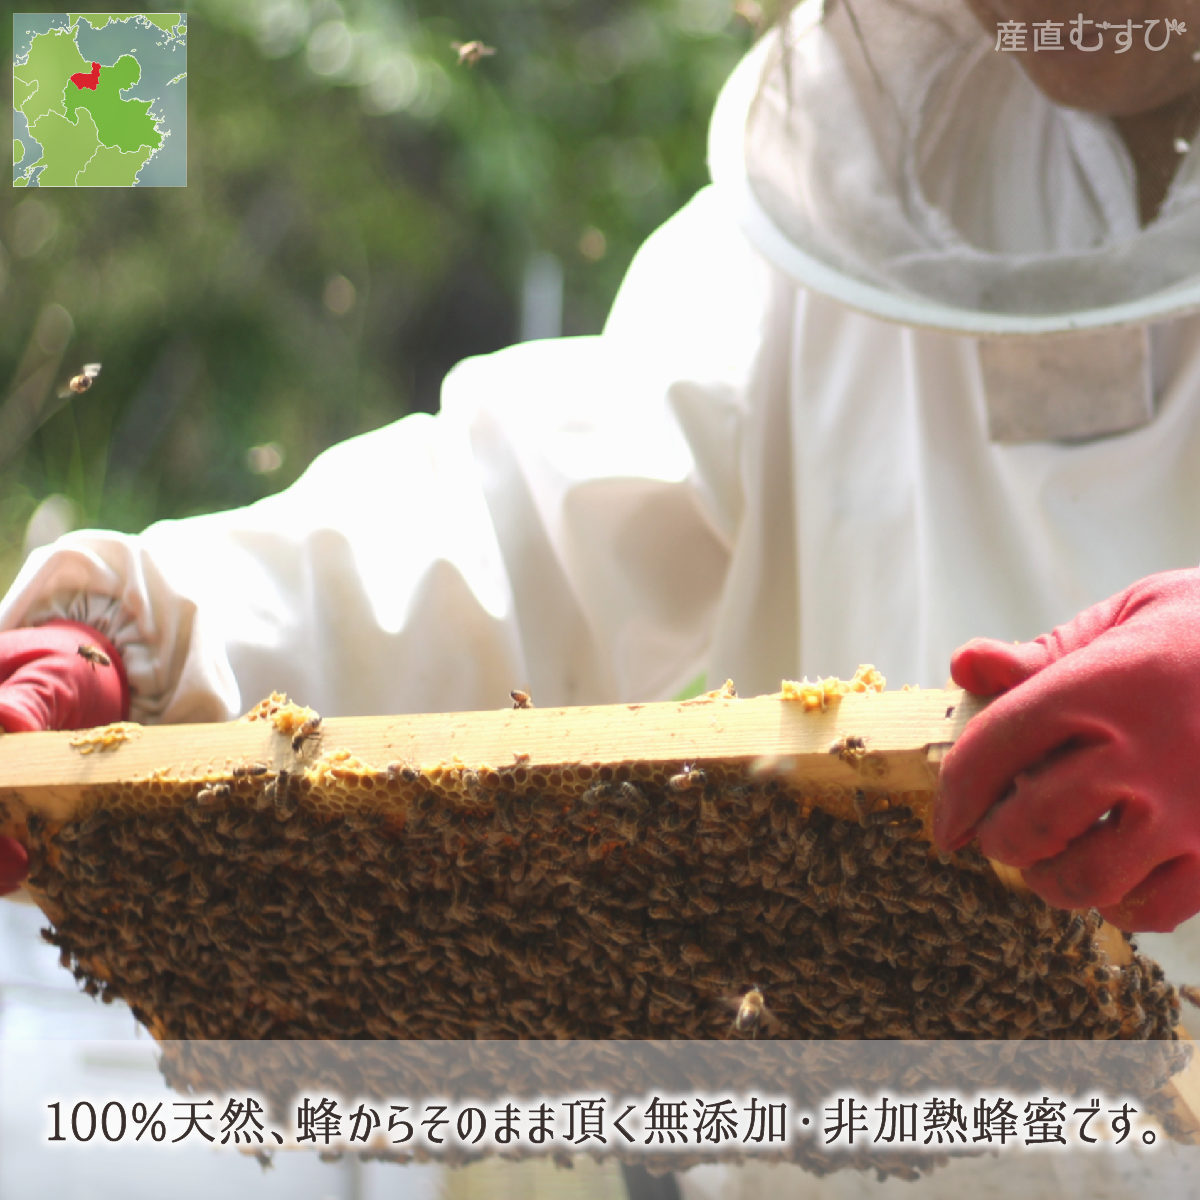 レンゲ蜂蜜 糖度80度以上 無添加 非加熱 全原材料国産 天然 純粋蜂蜜